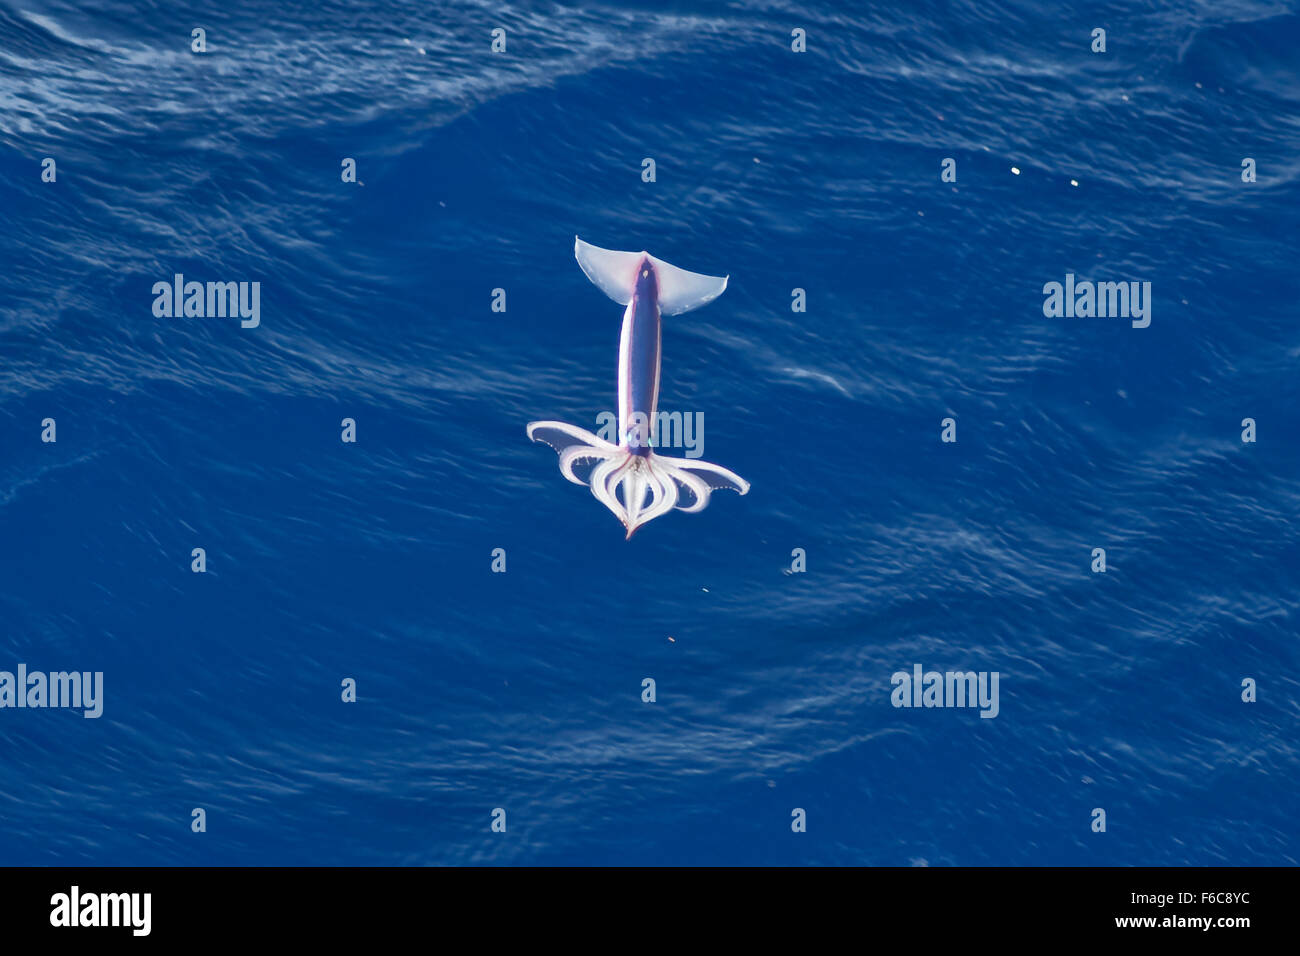 Très rare image d'un encornet volant néon (Ommastrephes bartramii) à la mi-air, l'océan Atlantique Sud, pas une manipulation numérique Banque D'Images